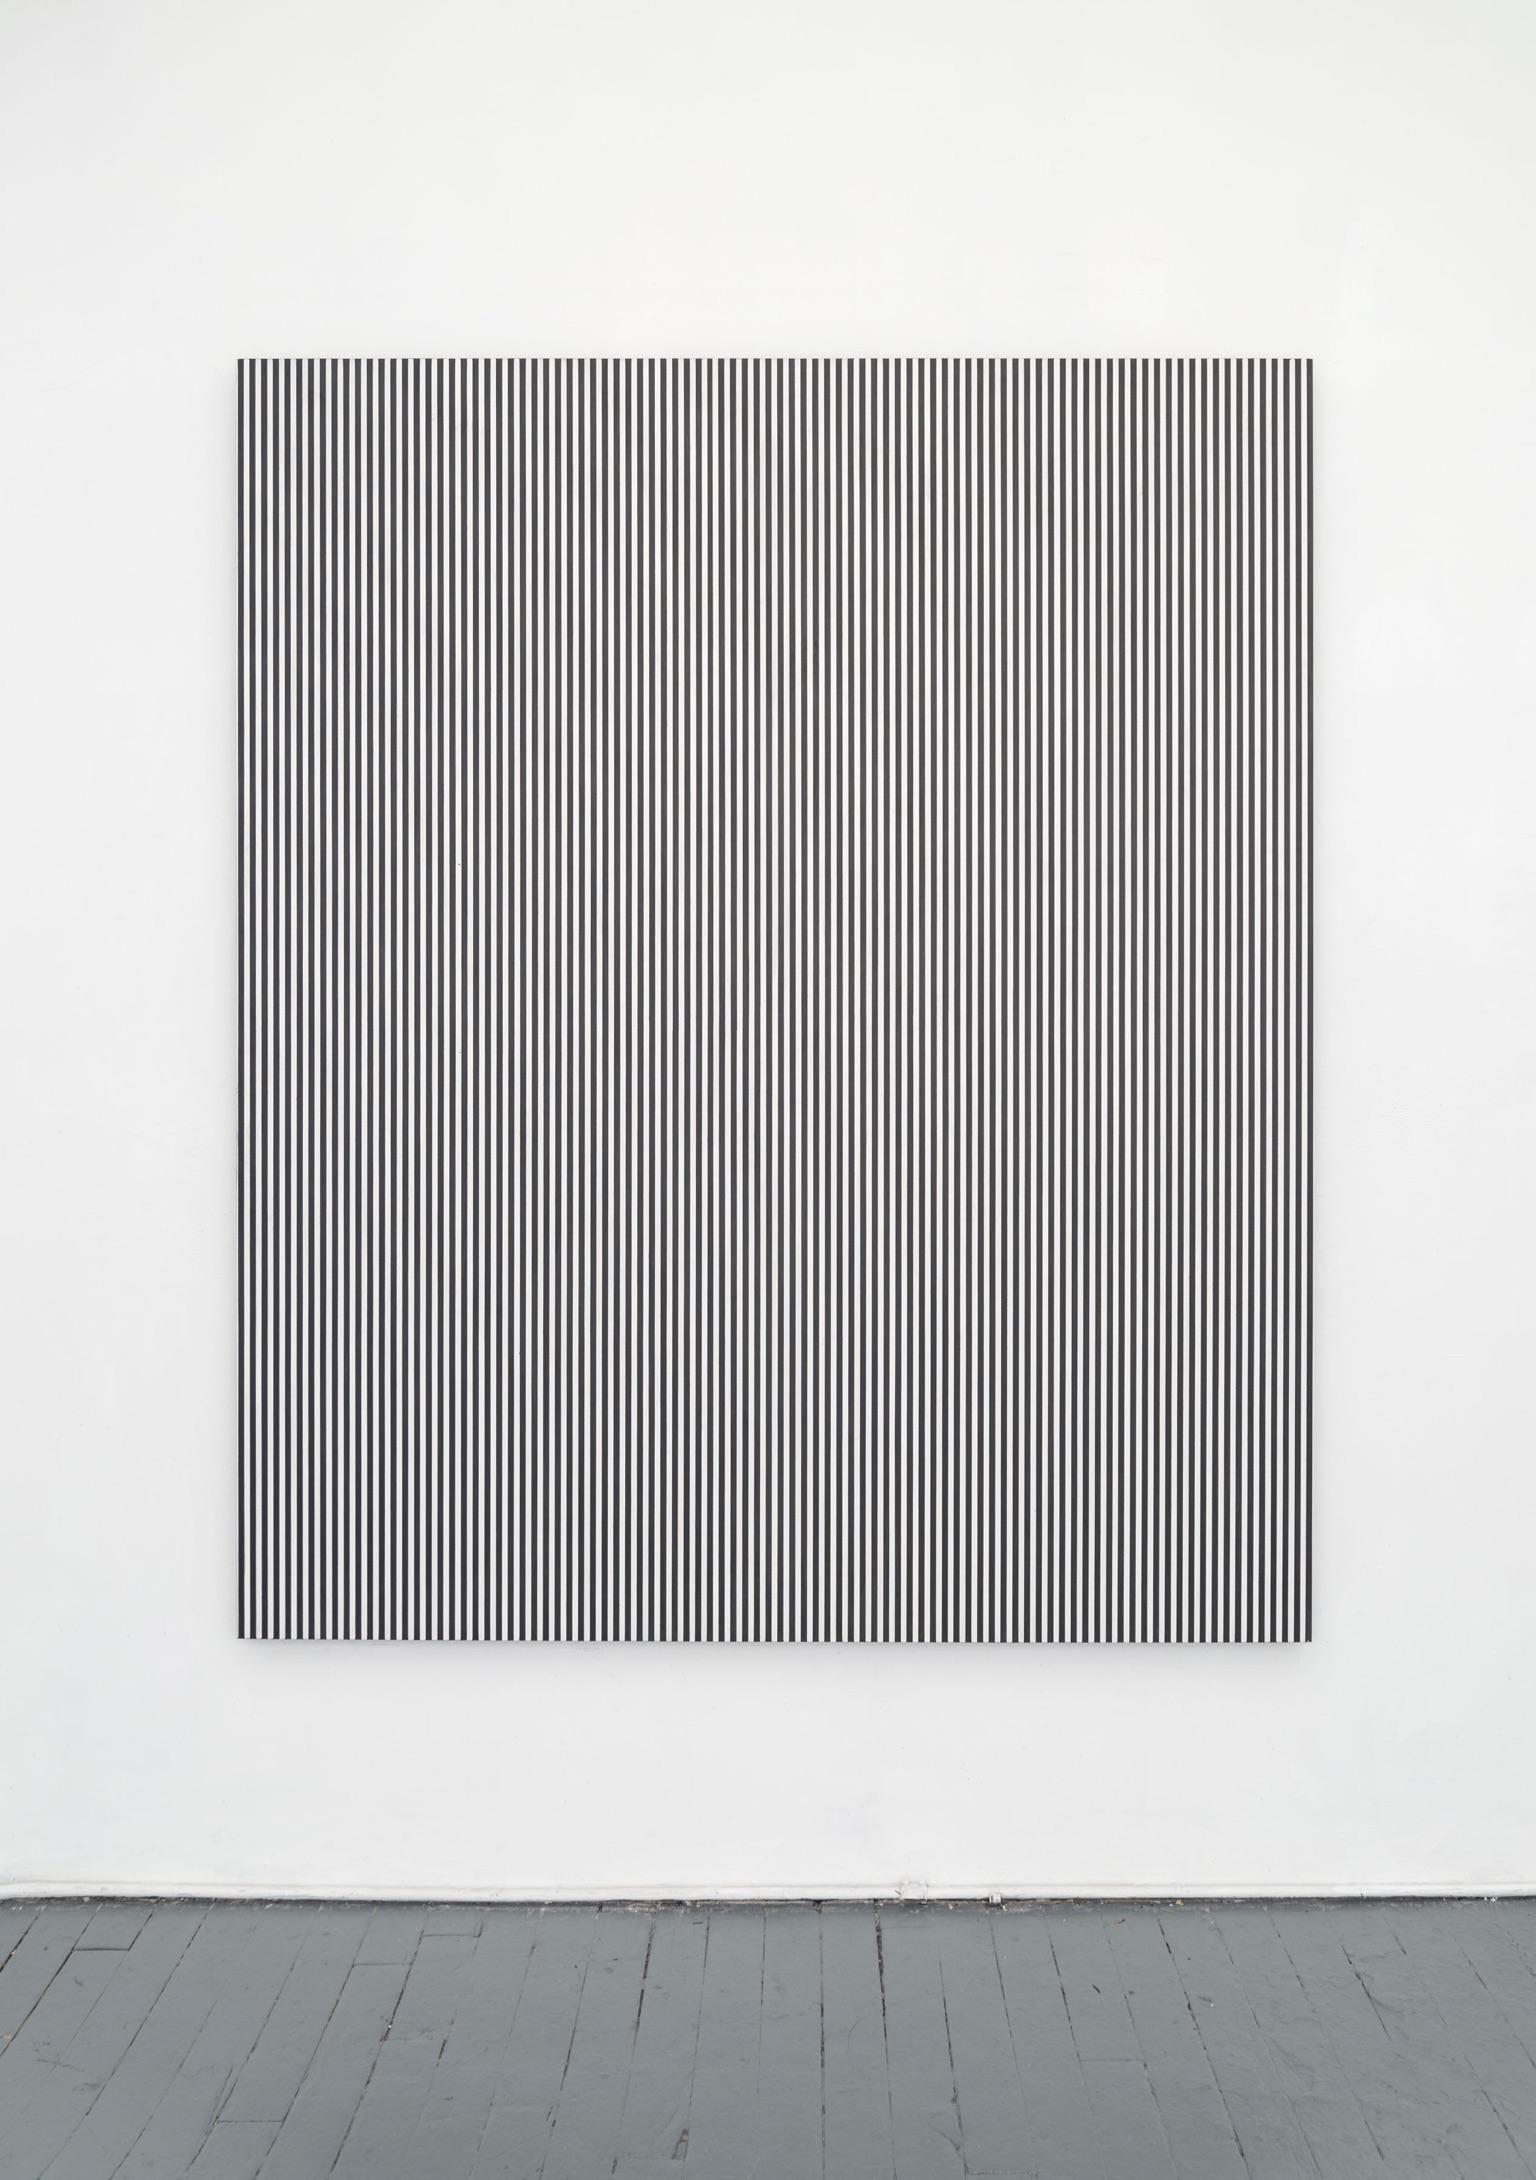 Untitled, 2016
Enamel on aluminum
75 x 63 inches
SGI3355